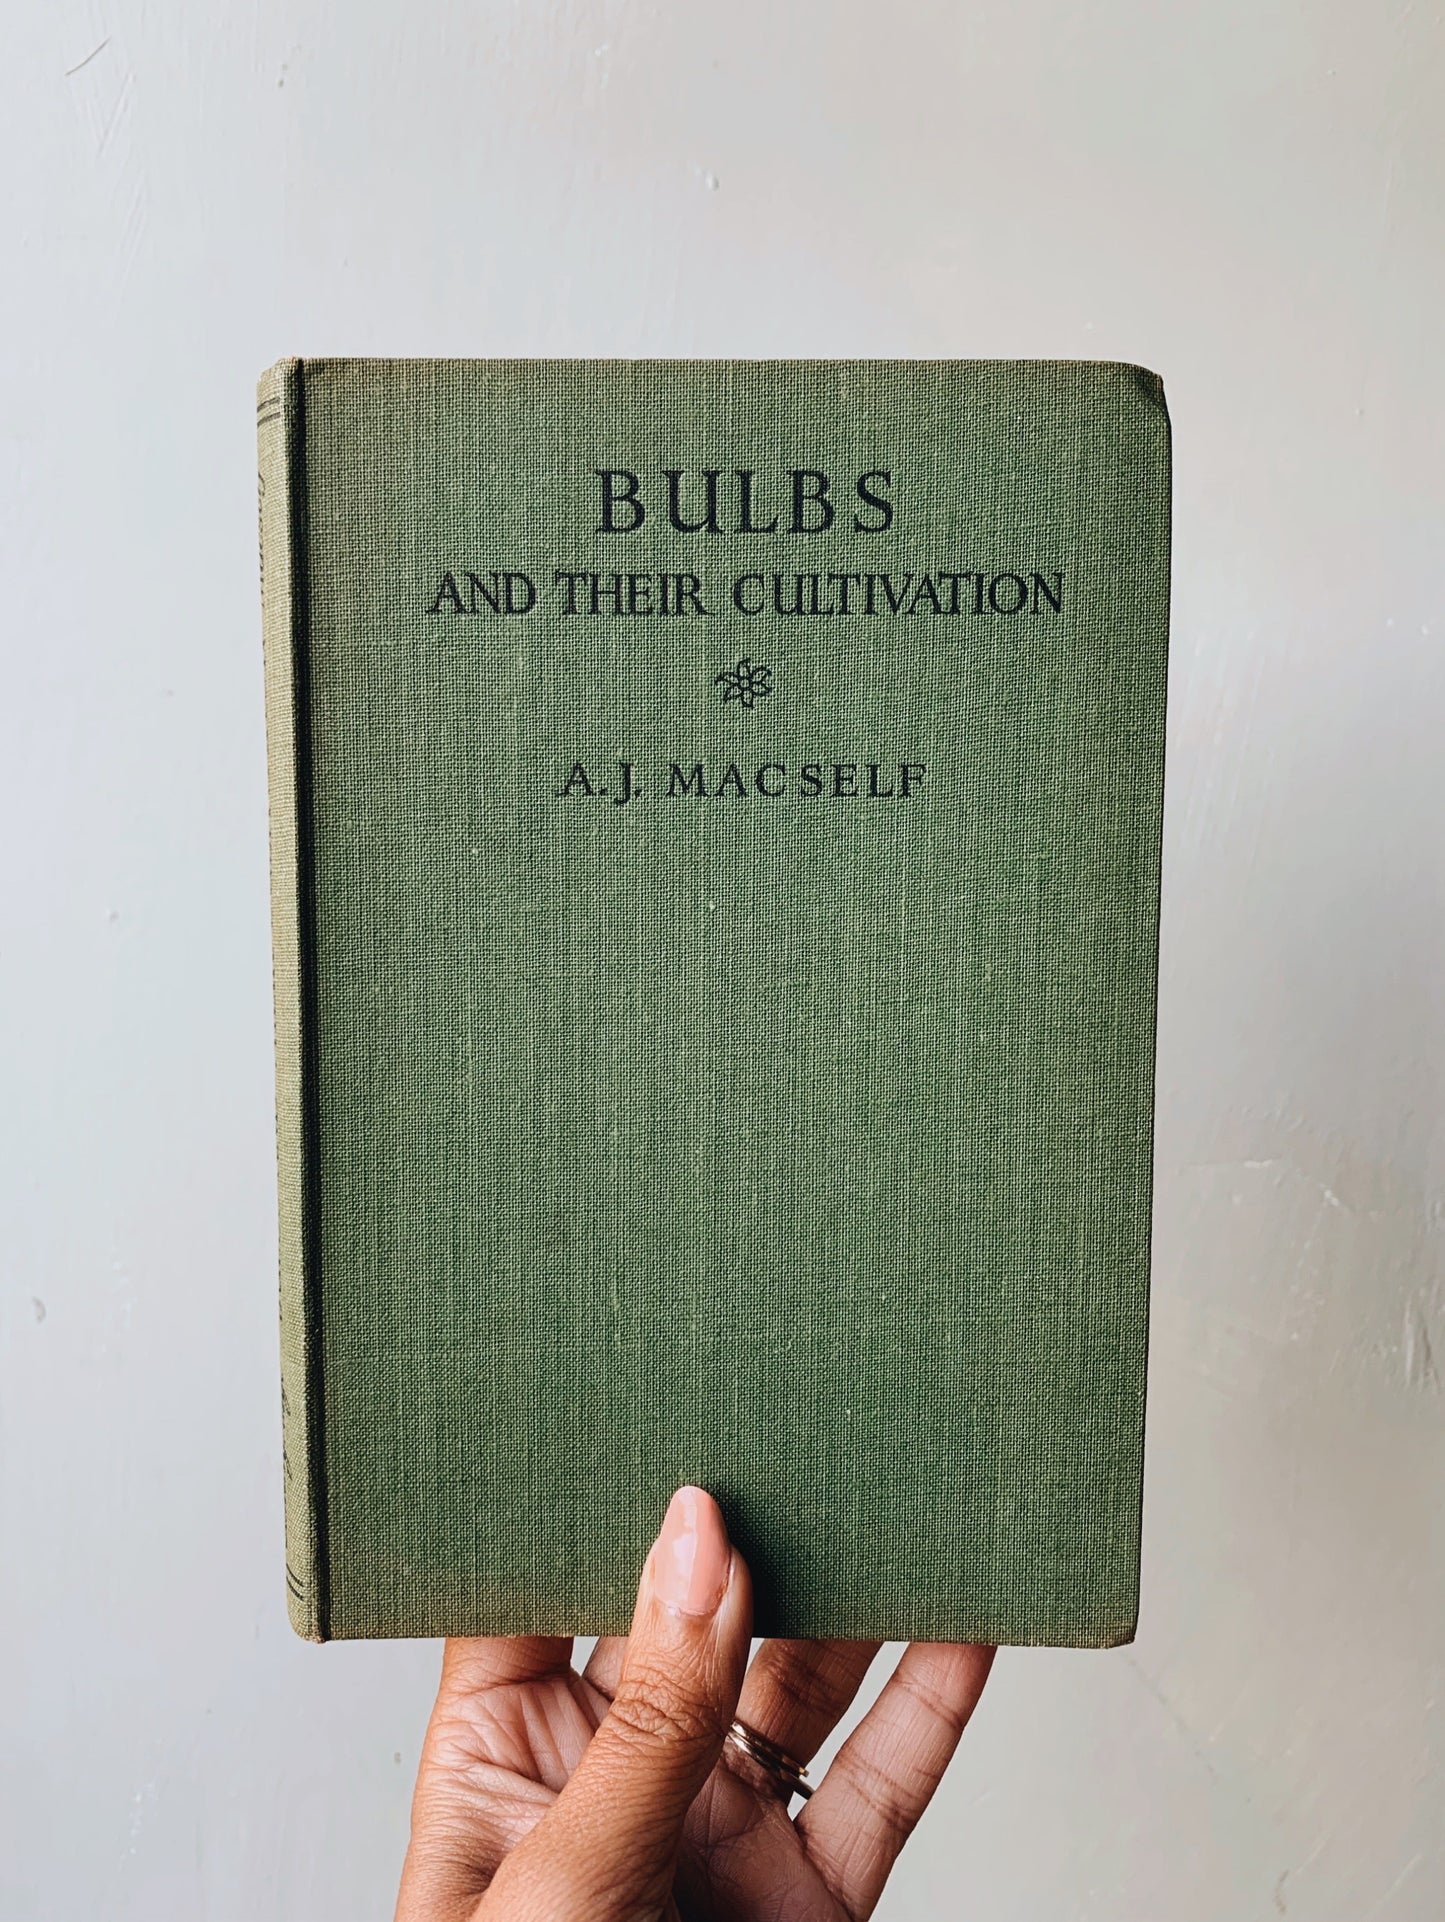 1948 Vintage Book “Bulbs & Their Cultivation”